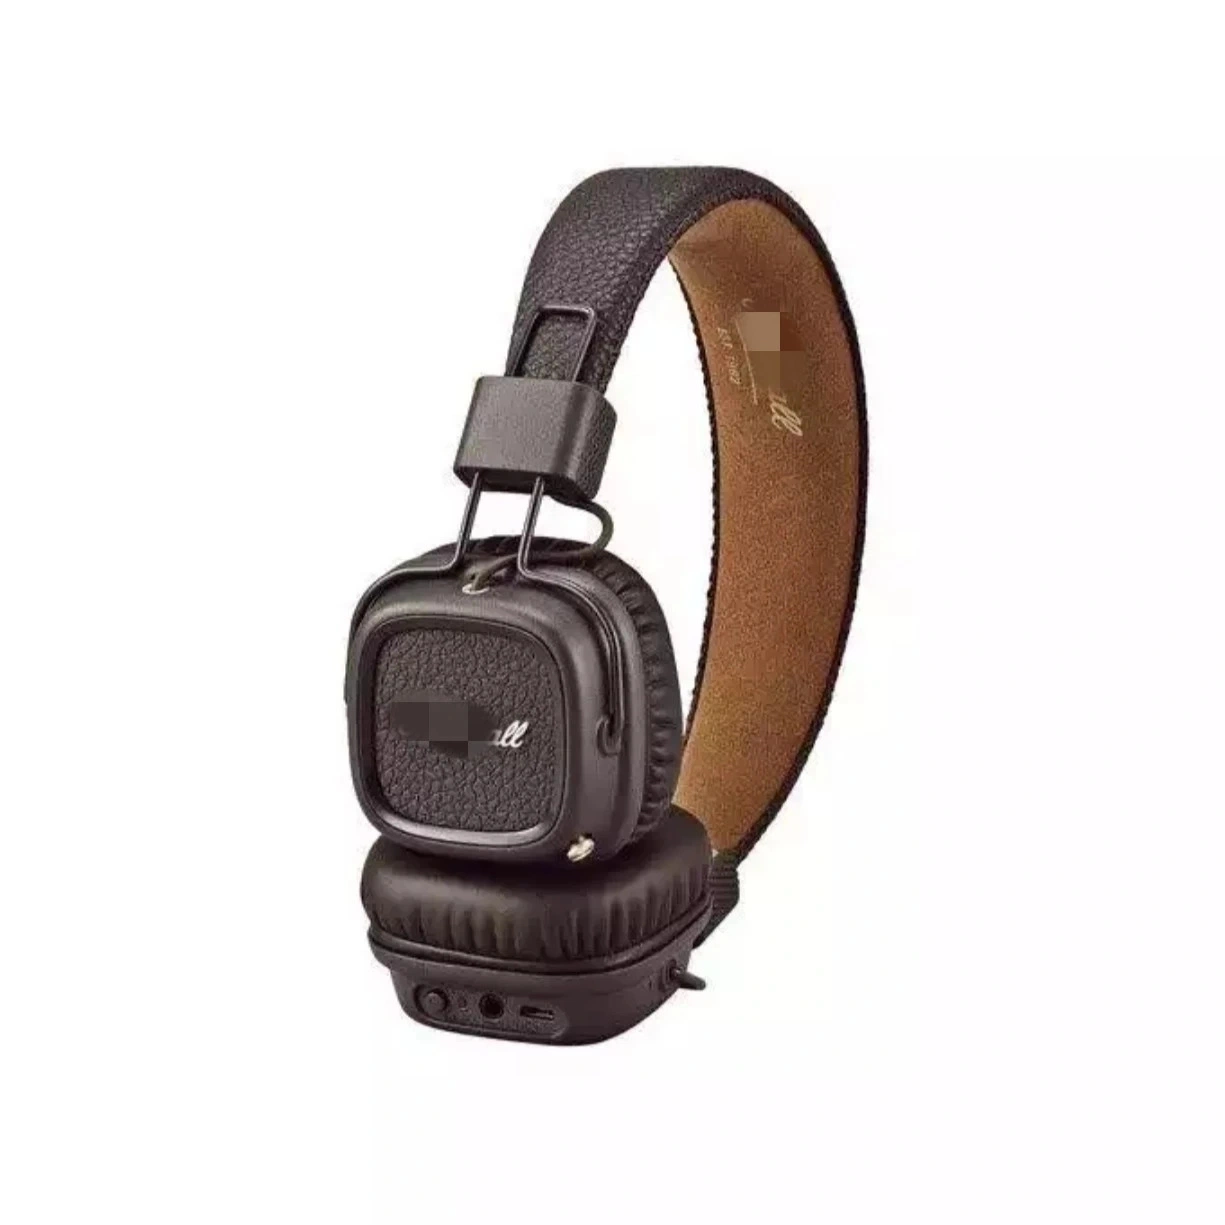 Auriculares inalámbricos Bluetooth ® Major III auriculares auriculares Deep Bass Foldable Sport Auriculares para juegos con reducción de ruido de graves